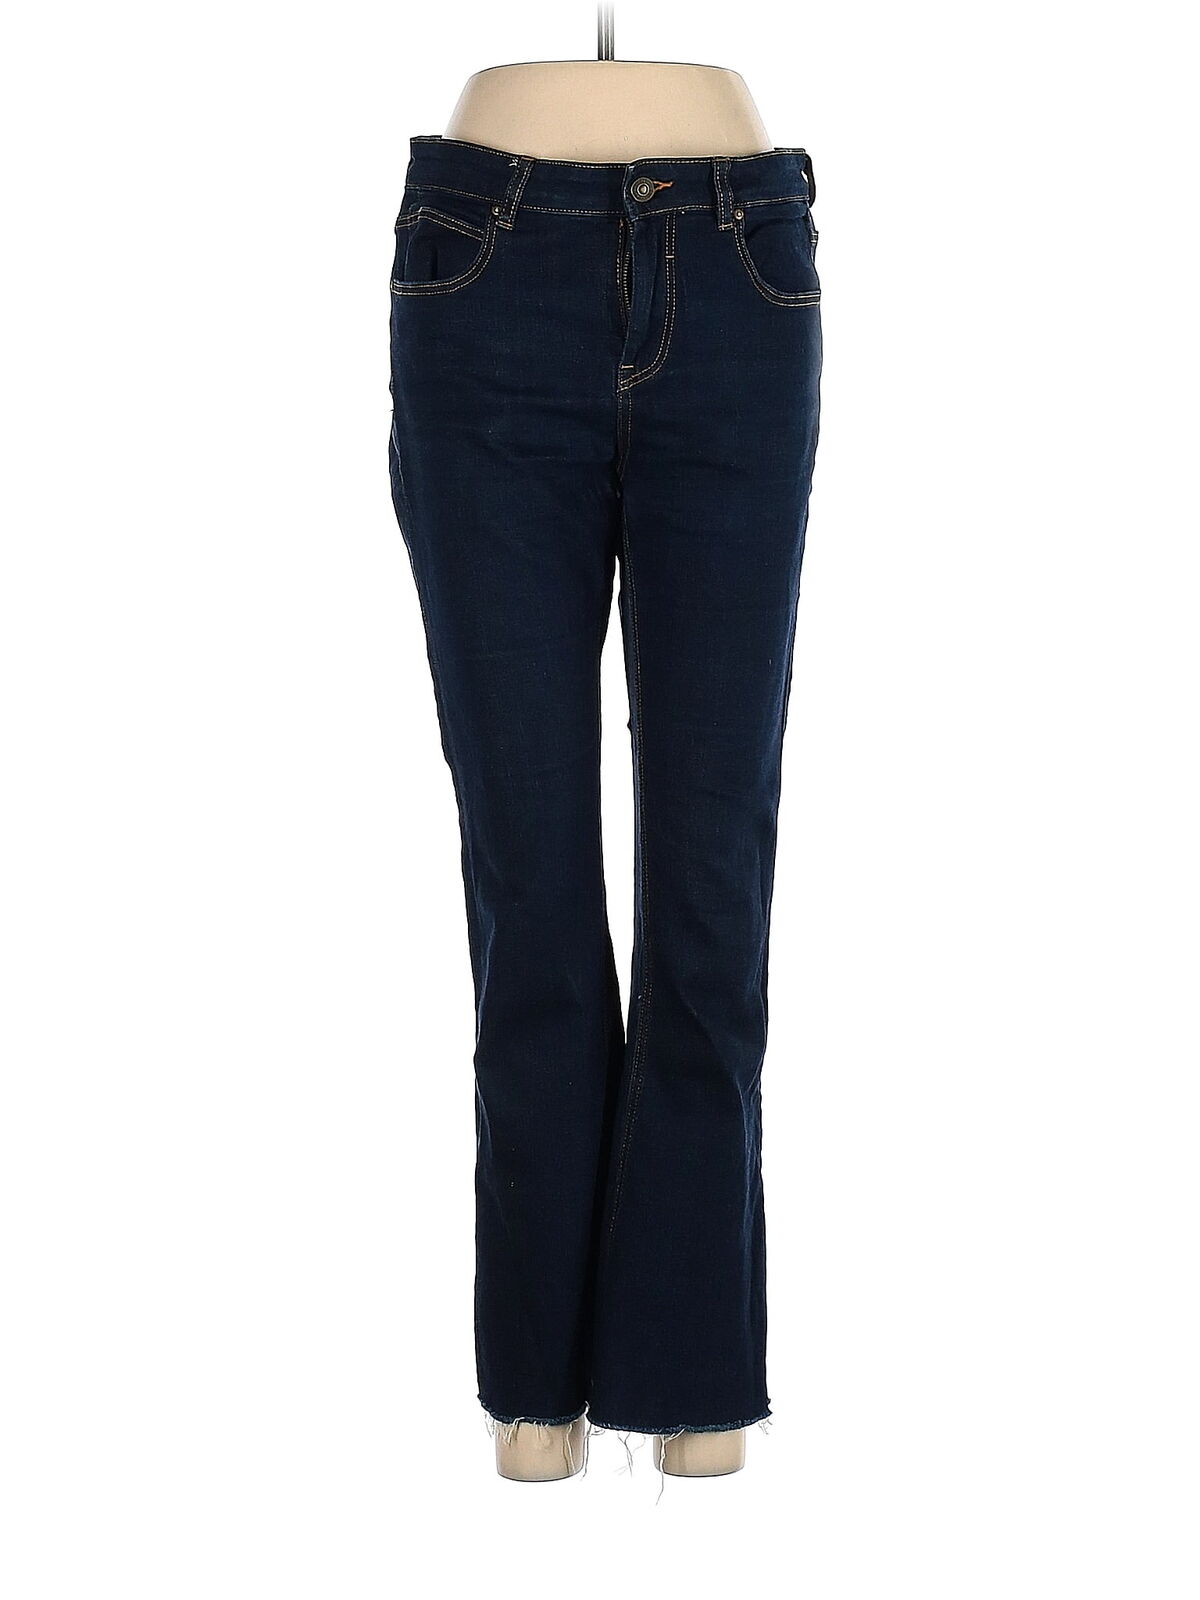 Zara Women Blue Jeans 8 | eBay